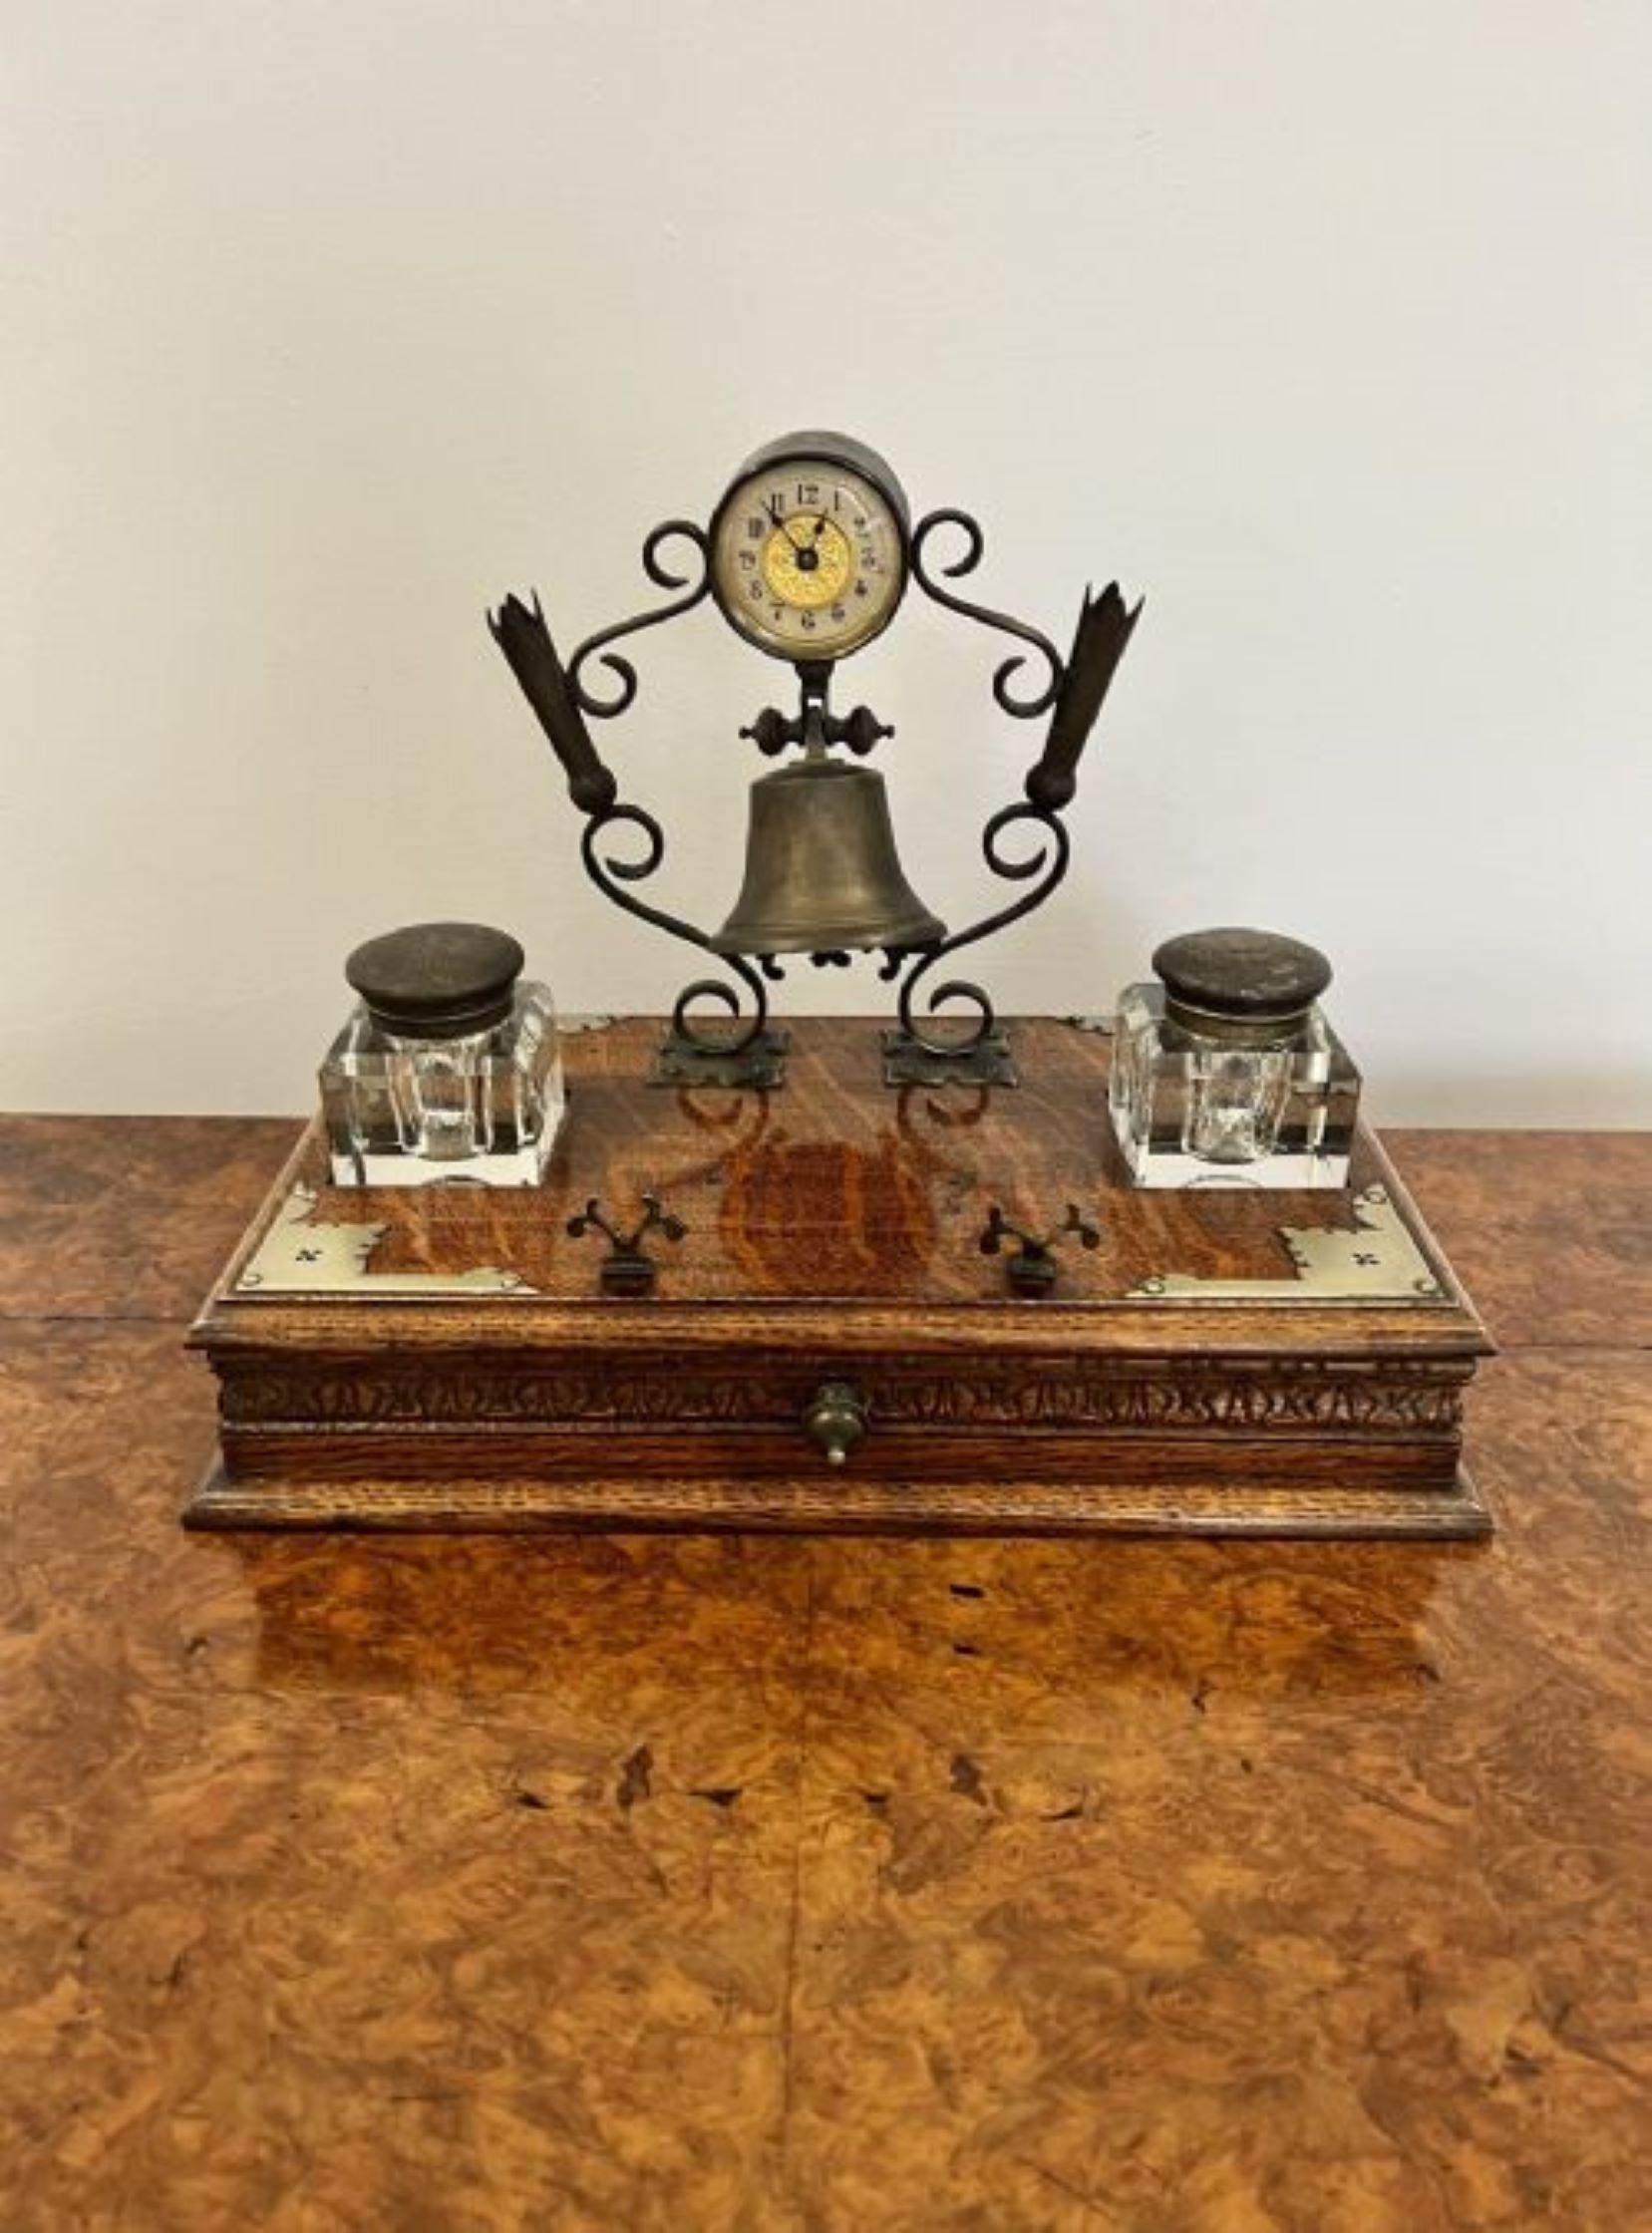 Ungewöhnliche Qualität antiken viktorianischen Schreibtisch mit einer Qualität geformt Messingständer mit einem runden Uhr, Glocke und Stifthalter, über einem Eichenholz Basis mit versilberten Ecken und die ursprüngliche Paar abnehmbare Glas